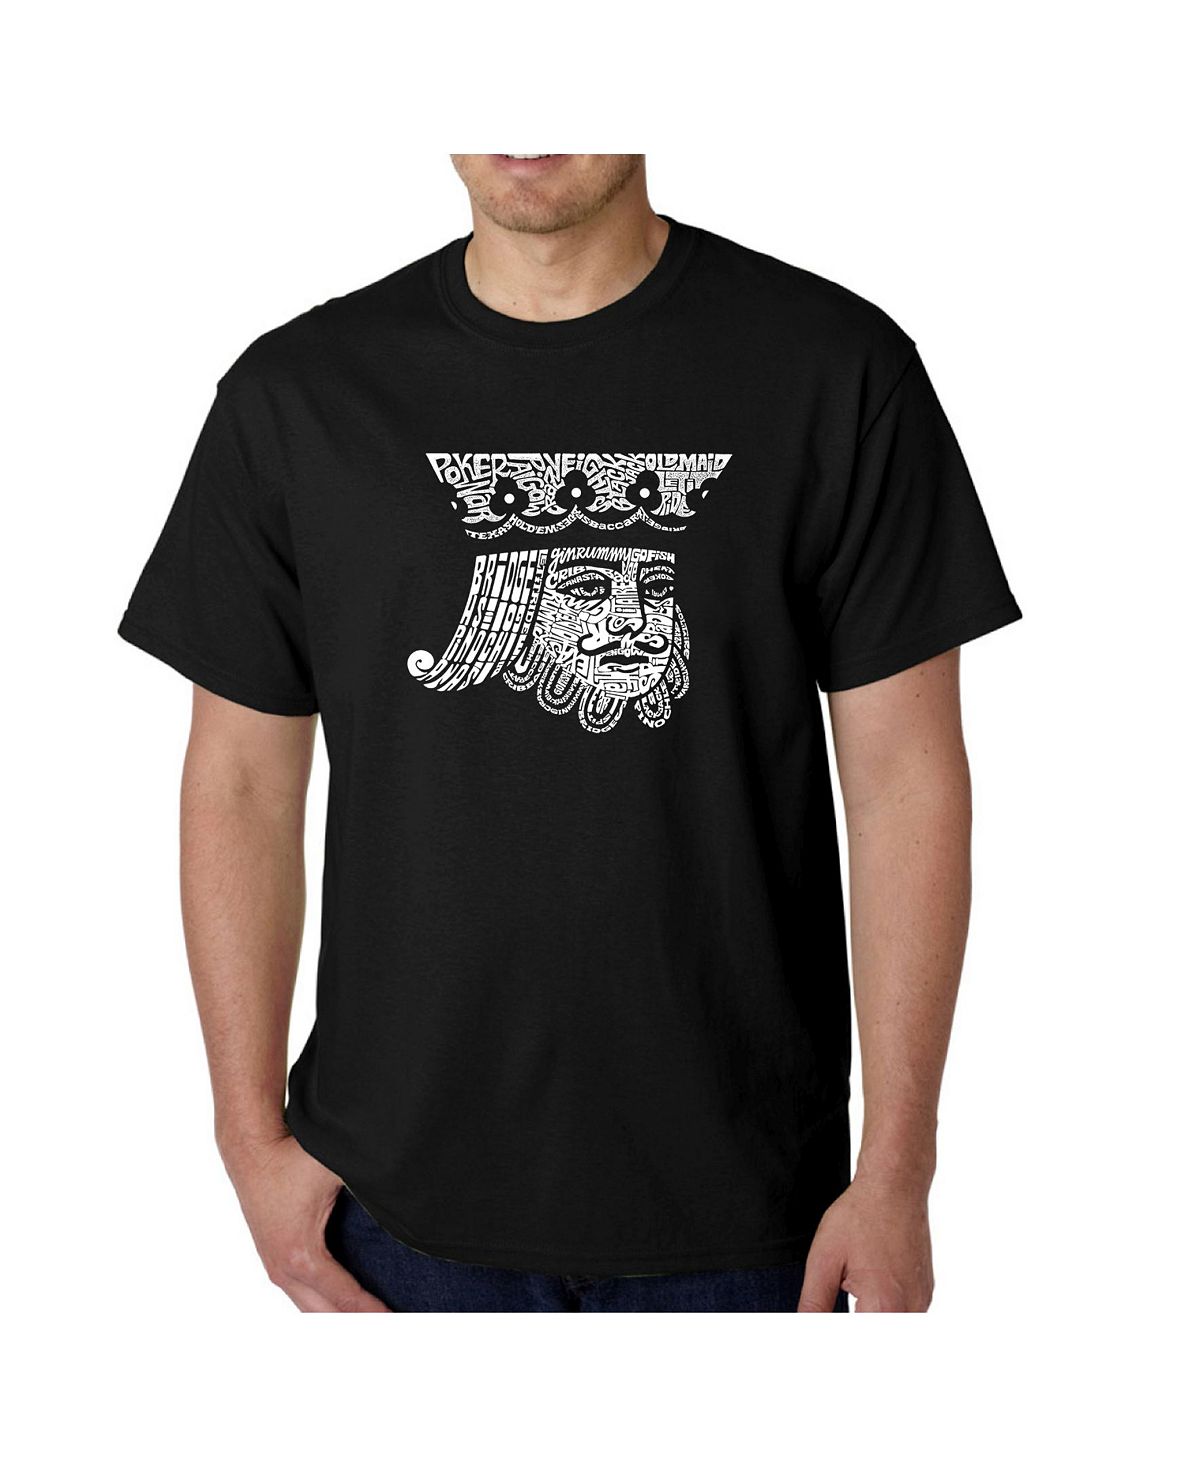 Мужская футболка с рисунком Word Art — Пиковый король LA Pop Art мужская футболка премиум класса word art пиковый король la pop art красный